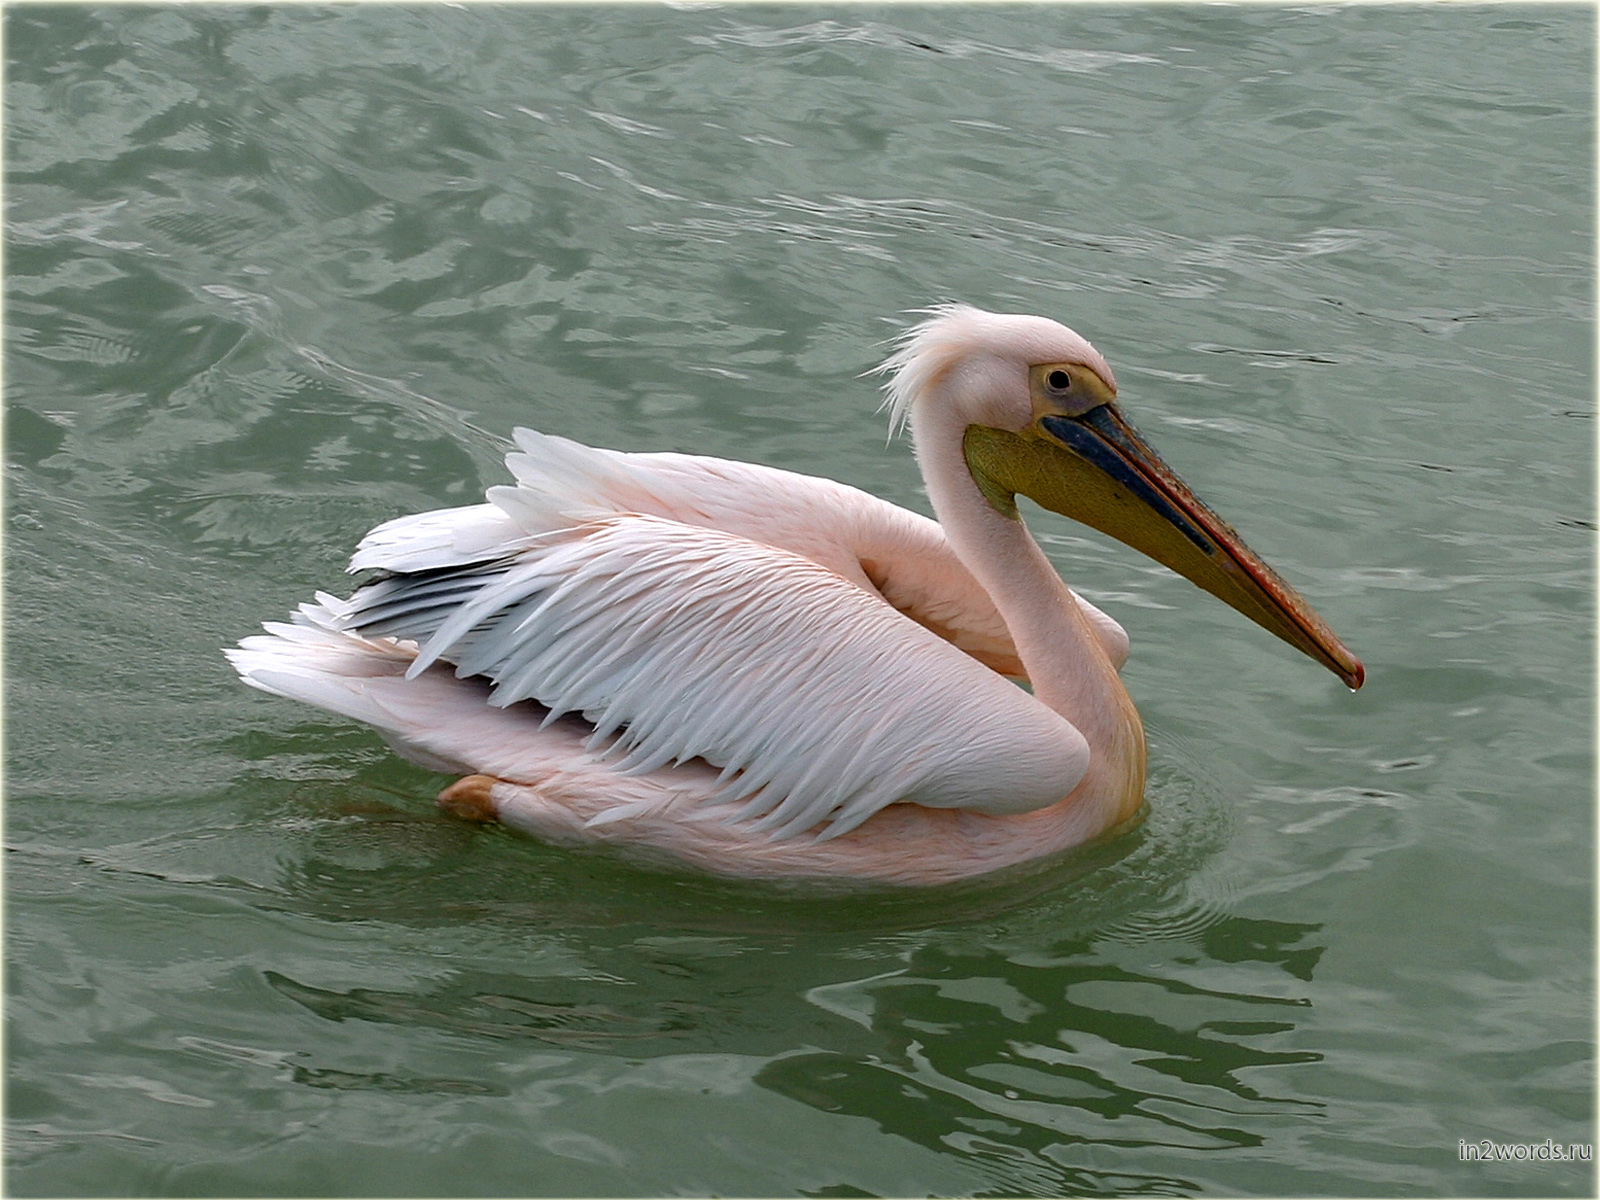 Гламурные розовые пеликаны. Волвис Бэй (Walvis Bay), Намибия.